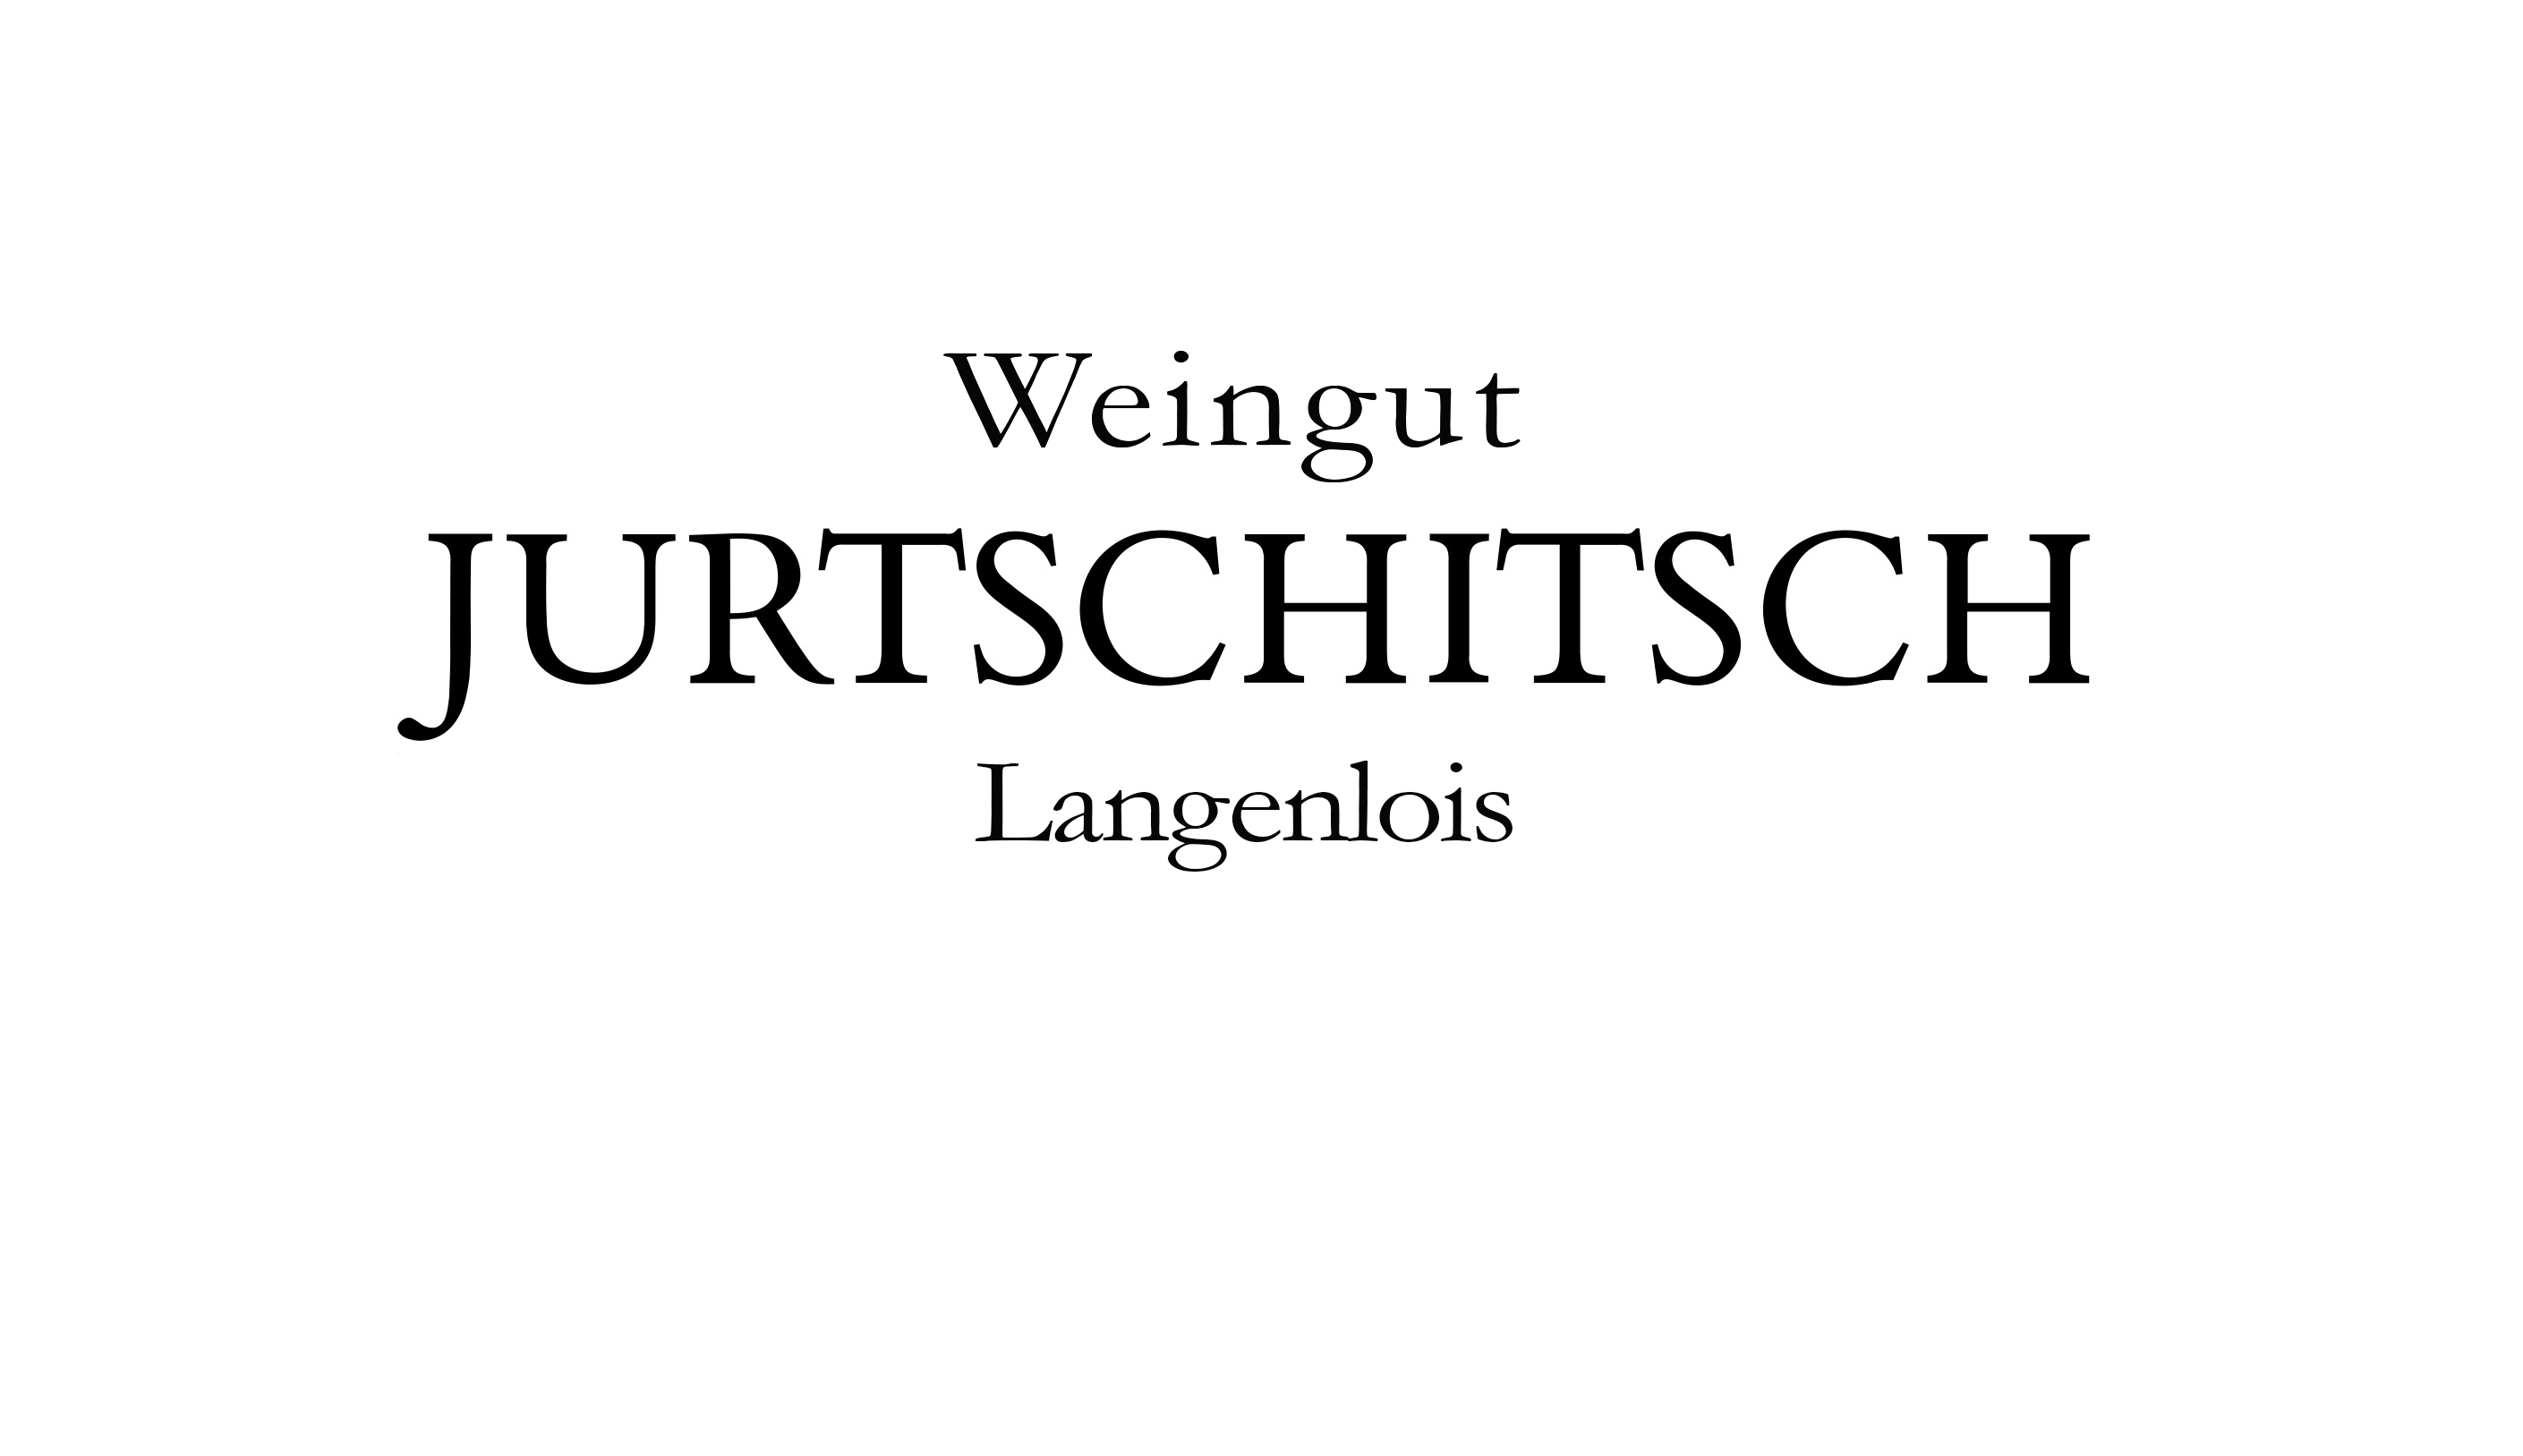 Weingut Jurtschitsch GmbH&Co KG